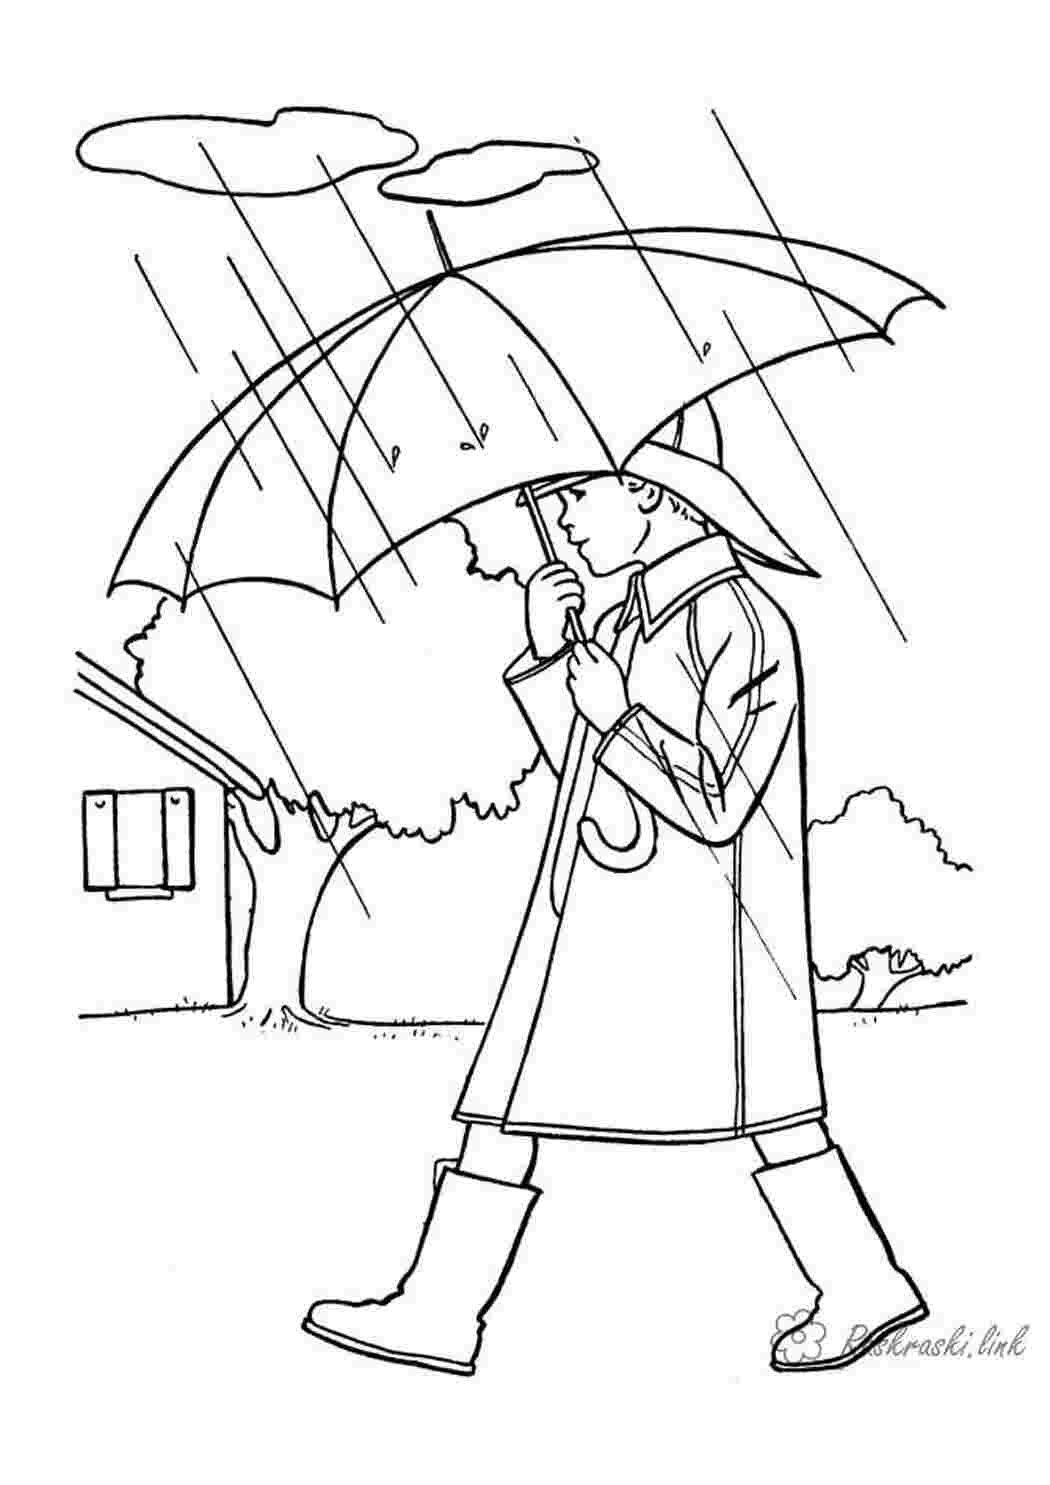 Раскраски Раскраски осень времена года раскраска осень дождь зонт человек Раскраски осень времена года раскраска осень дождь зонт человек  Раскраски скачать онлайн